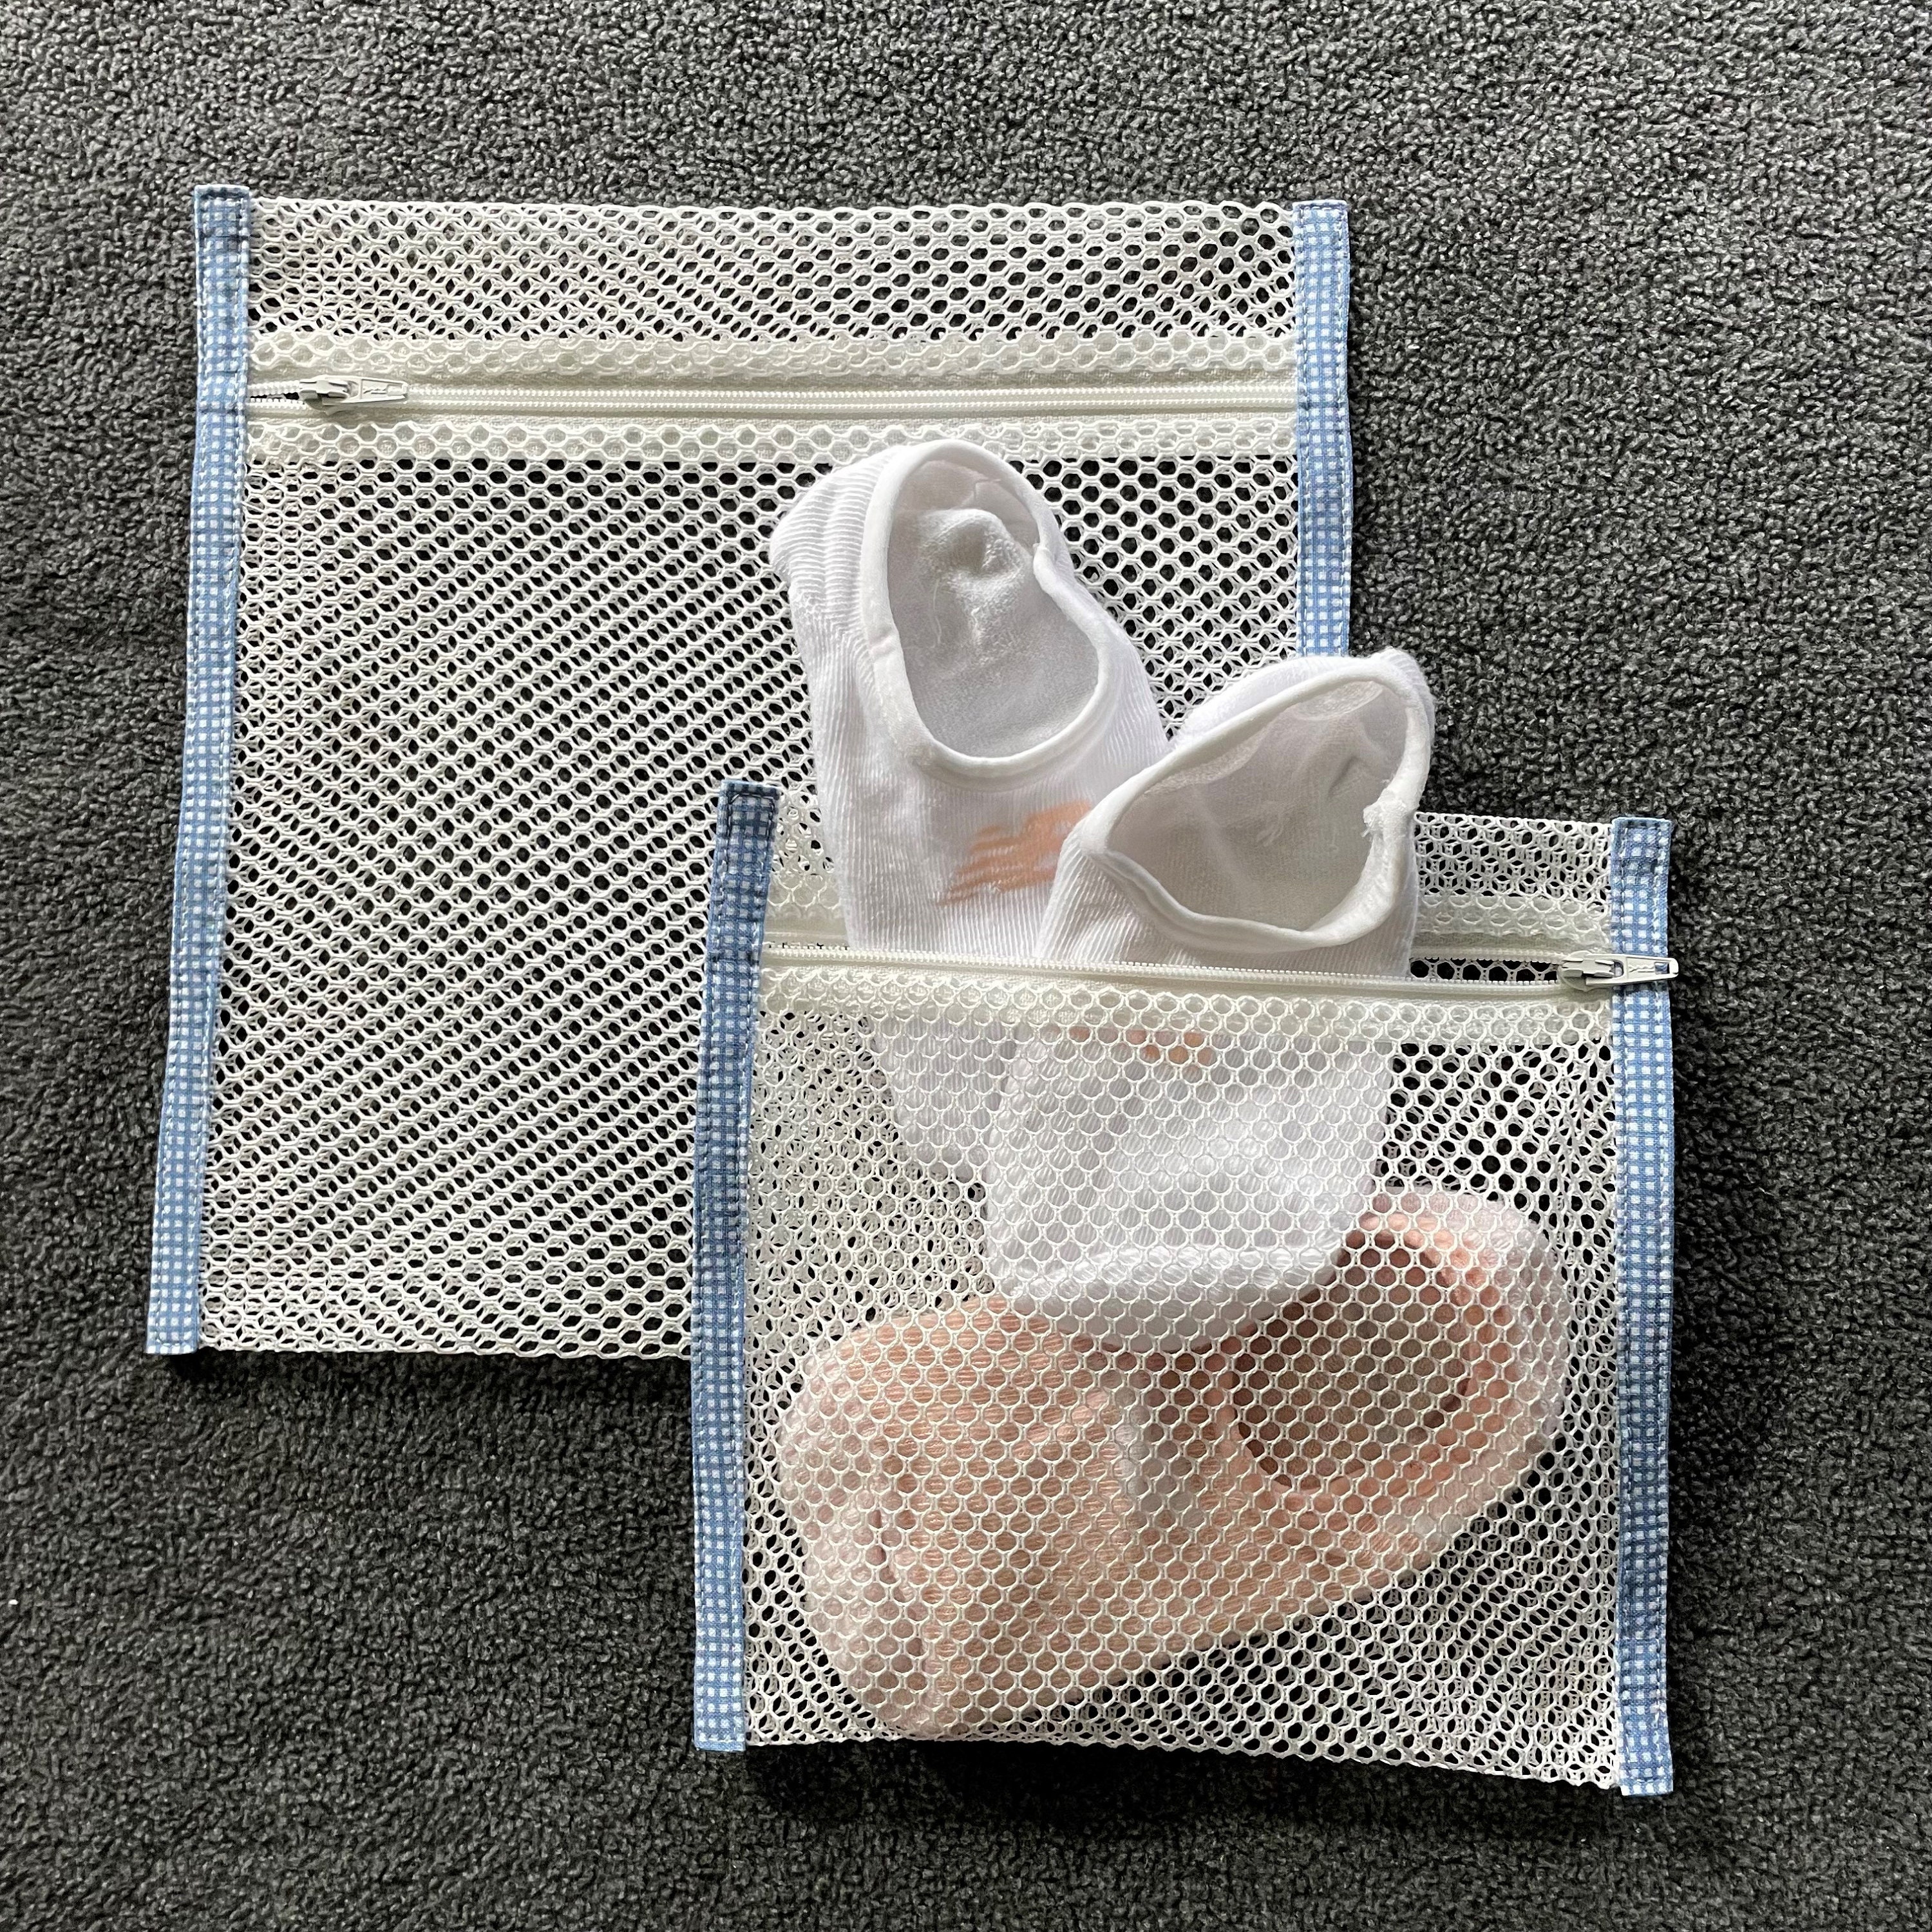 Linen Mesh Laundry Bag for Socks, Bra or Delicates. Lightweight